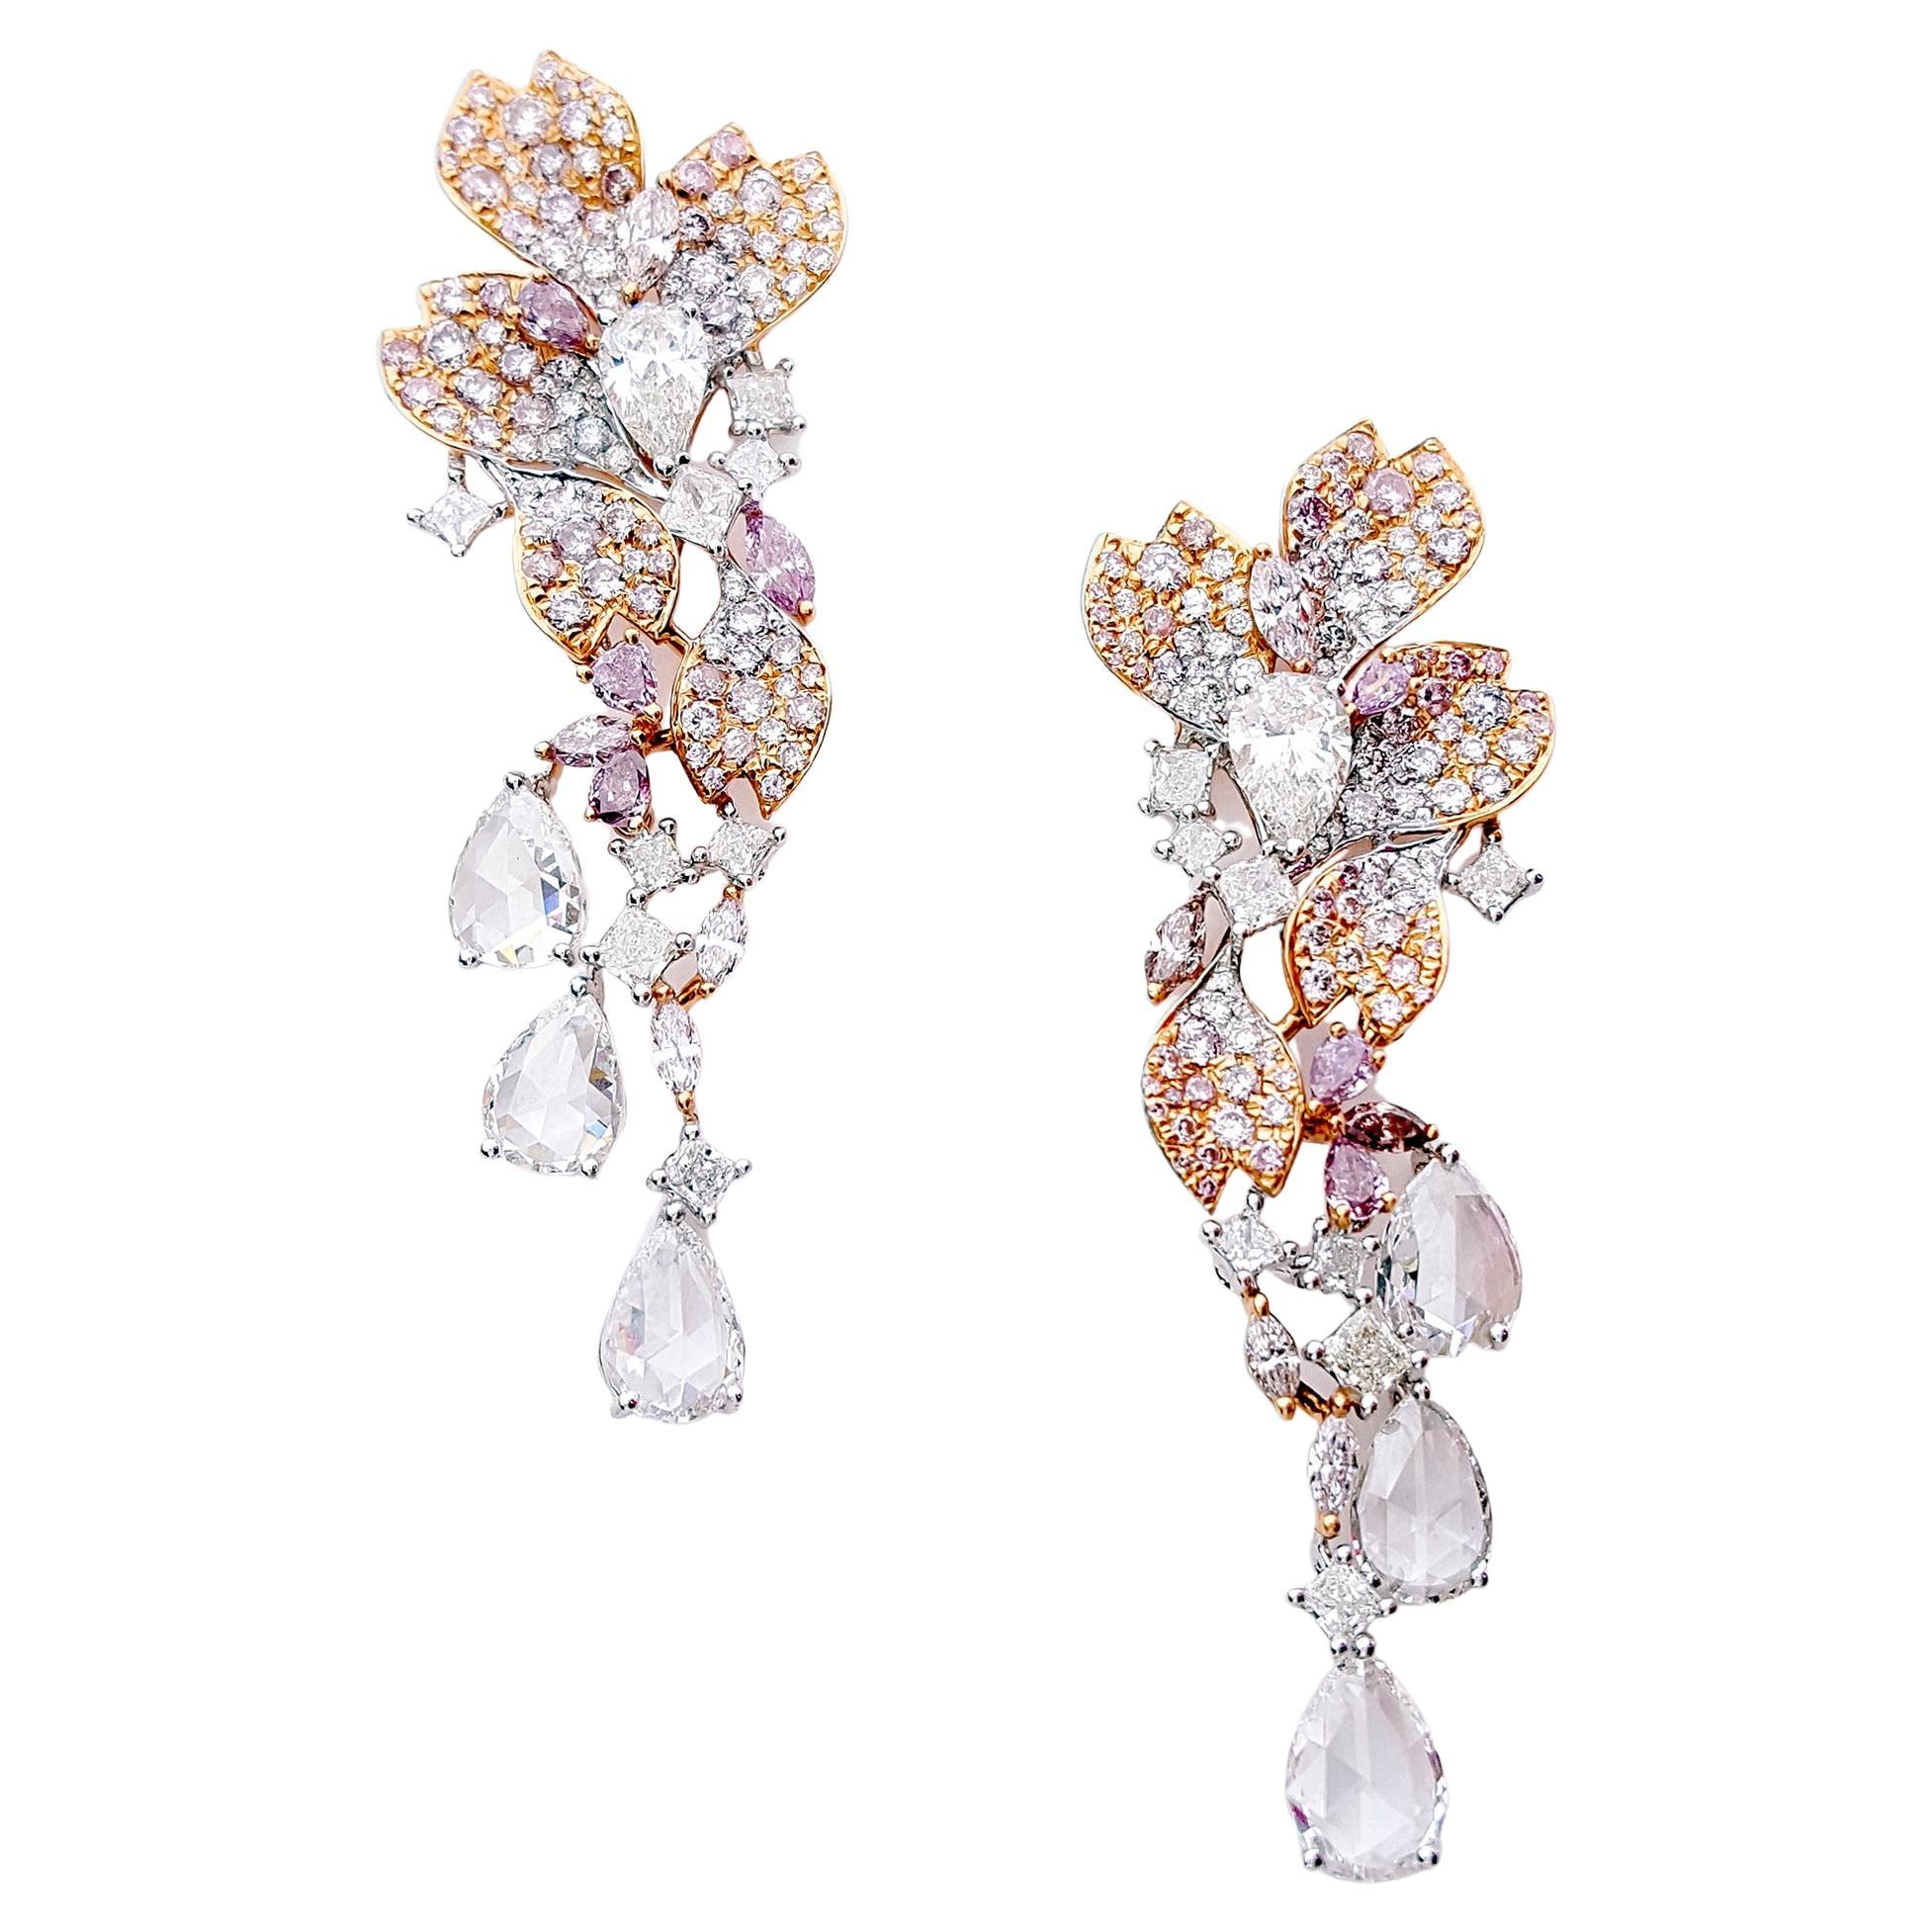 Boucles d'oreilles pendantes chandelier en or rose et blanc 18k de 6,93 carats de diamants roses et blancs.